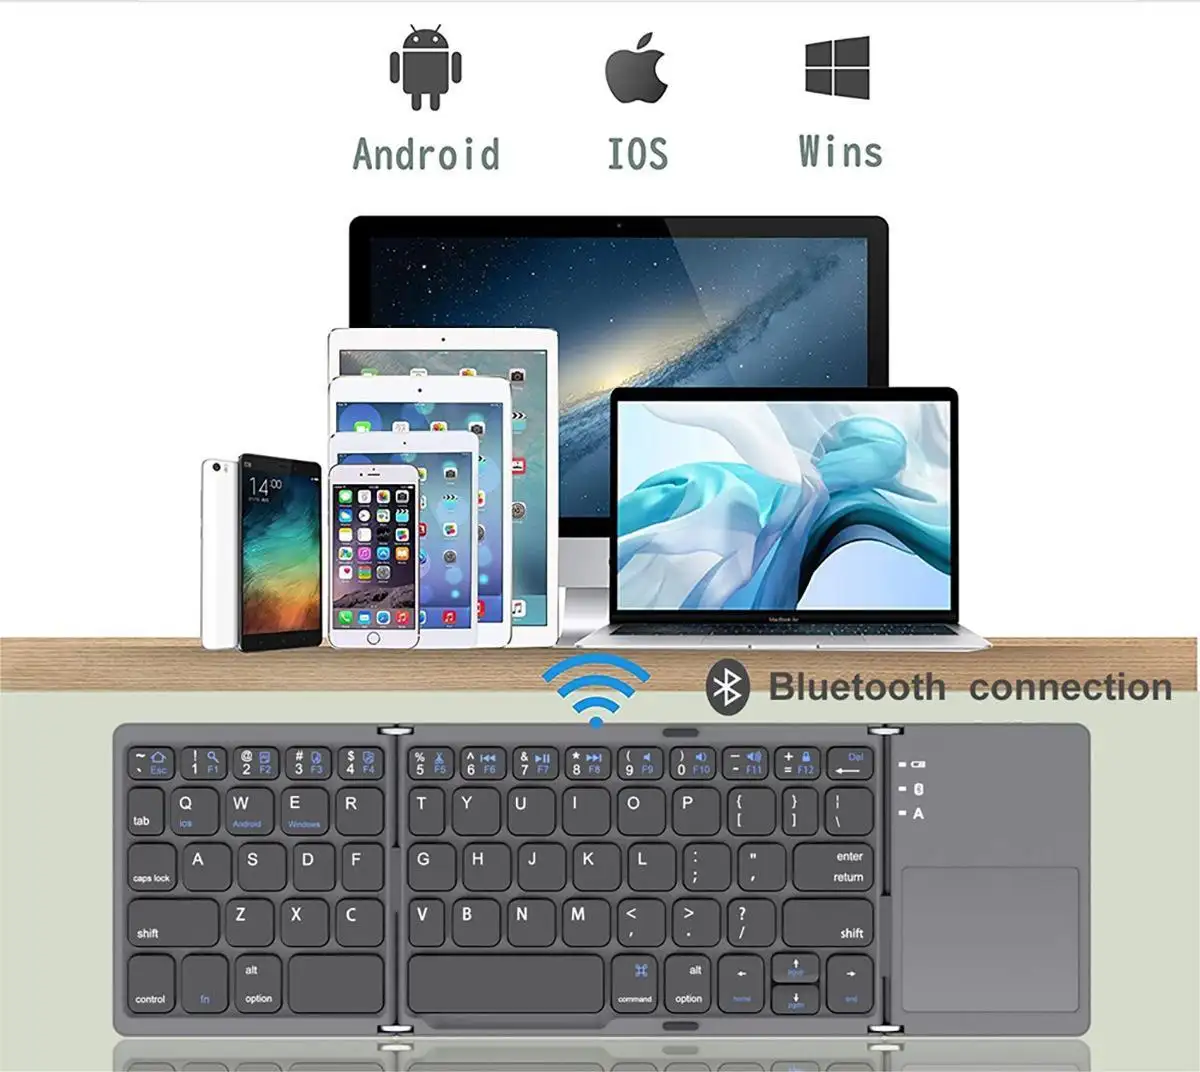 لوحة مفاتيح صغيرة قابلة للطي تعمل بالبلوتوث لوحة مفاتيح محمولة لاسلكية قابلة للطي تعمل باللمس على الكمبيوتر تعمل باللمس ميكانيكيًا لغة المملكة المتحدة للكمبيوتر